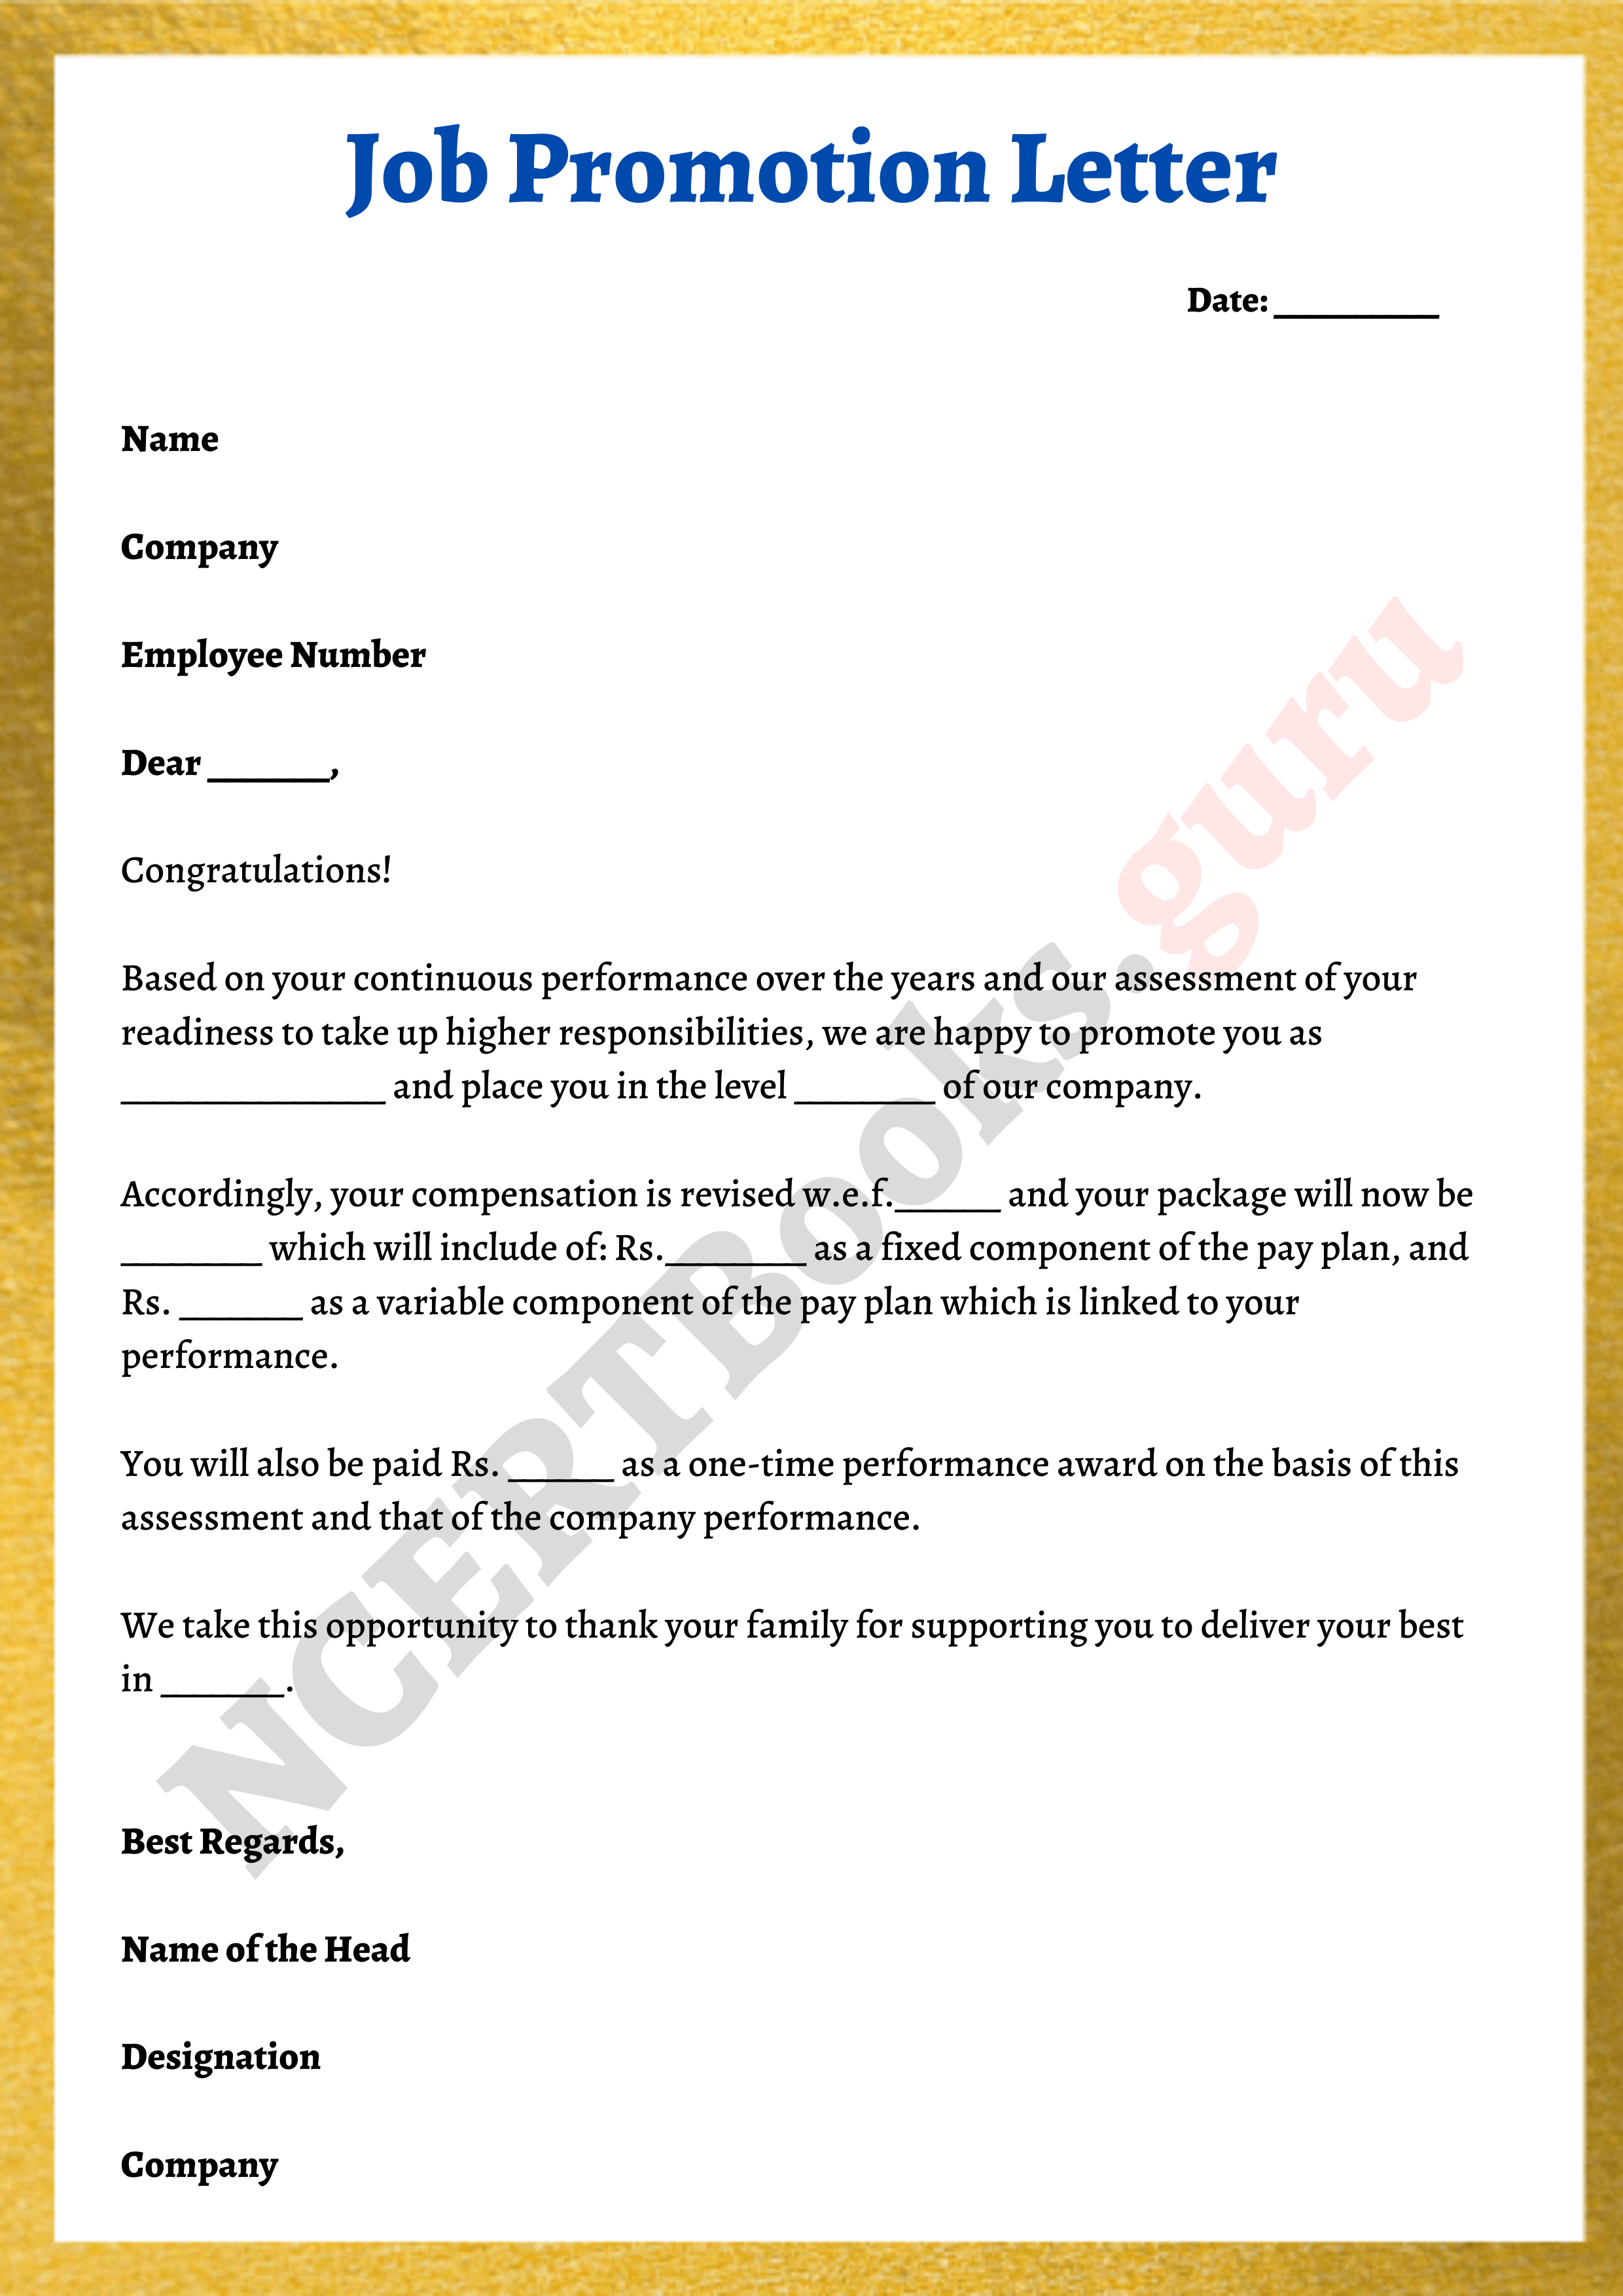 Job Promotion Letter